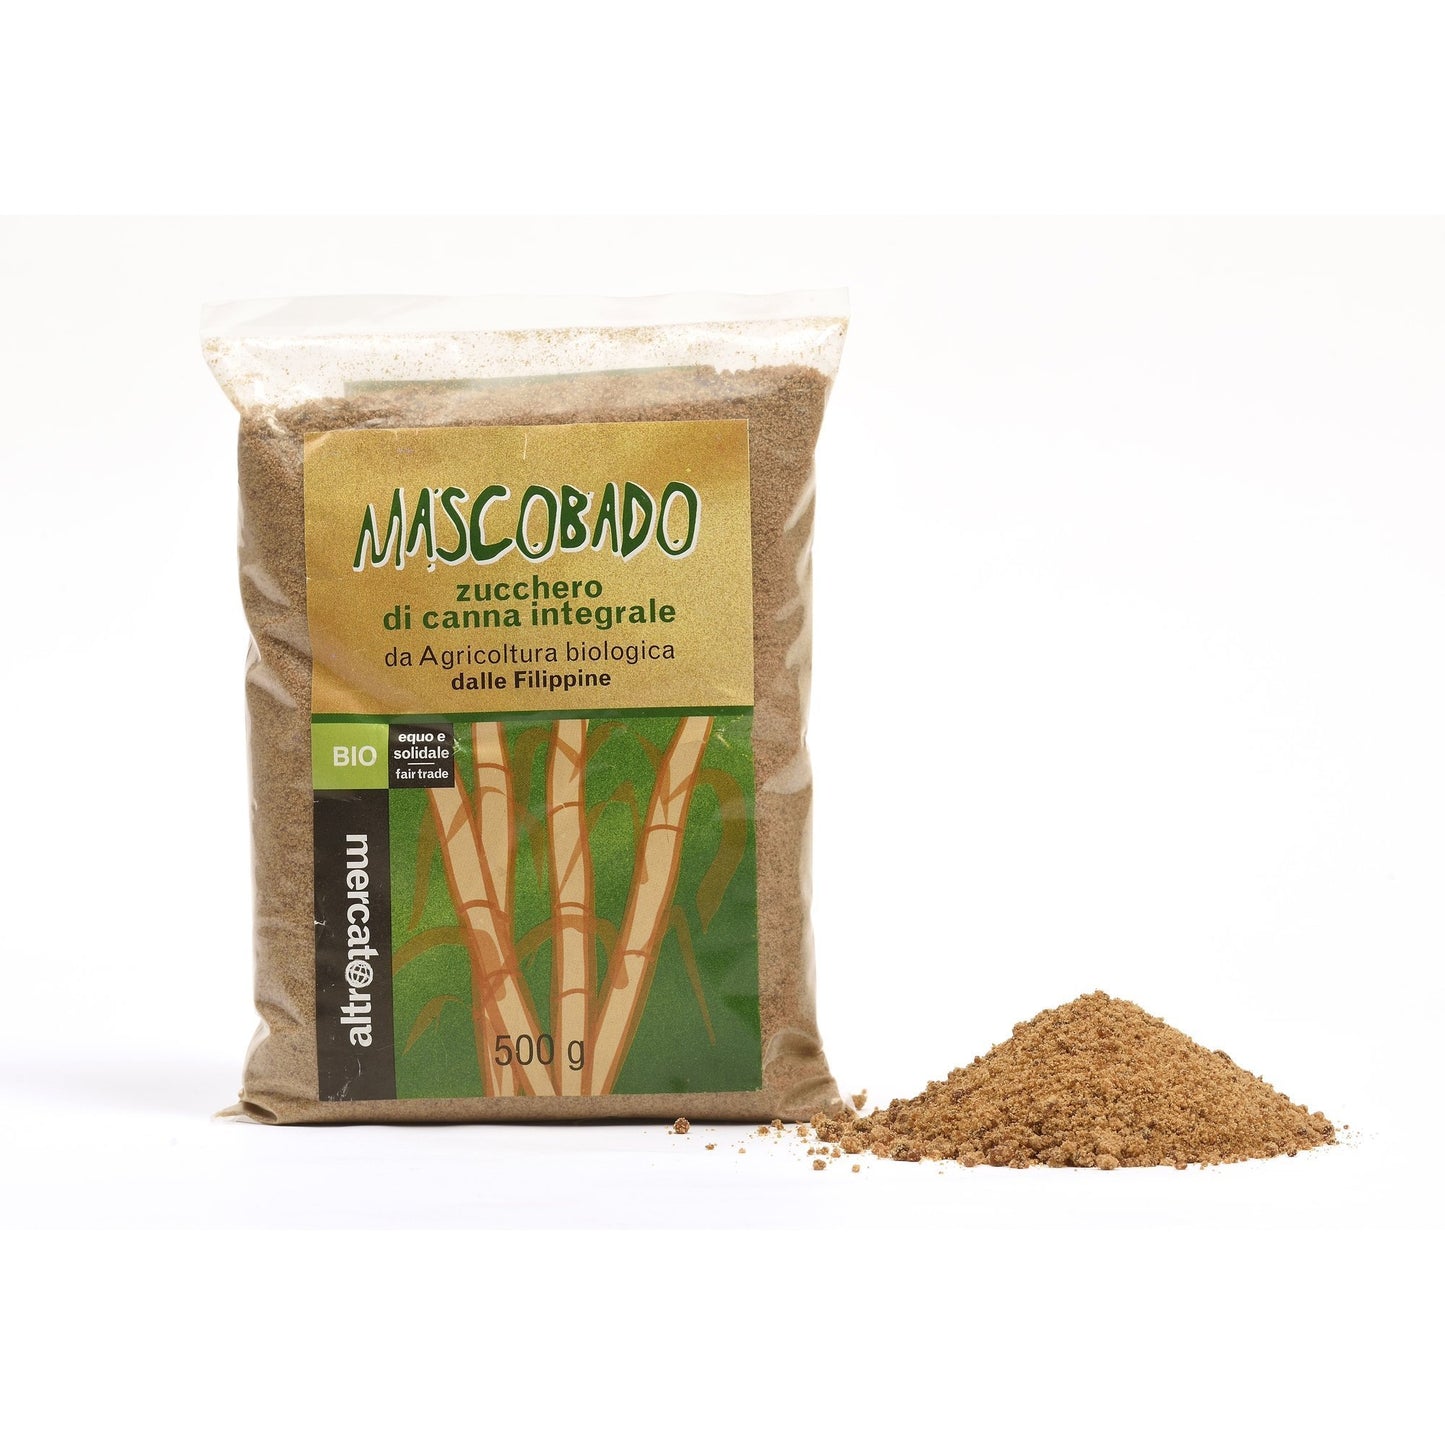 Lo zucchero integrale di canna Mascobado è prodotto secondo un'antica tecnica artigianale , per evaporazione. Mantiene tutte le qualità nutrizionali.Il suo sapore ha un sentore di liquirizia.Zucchero di grande qualità